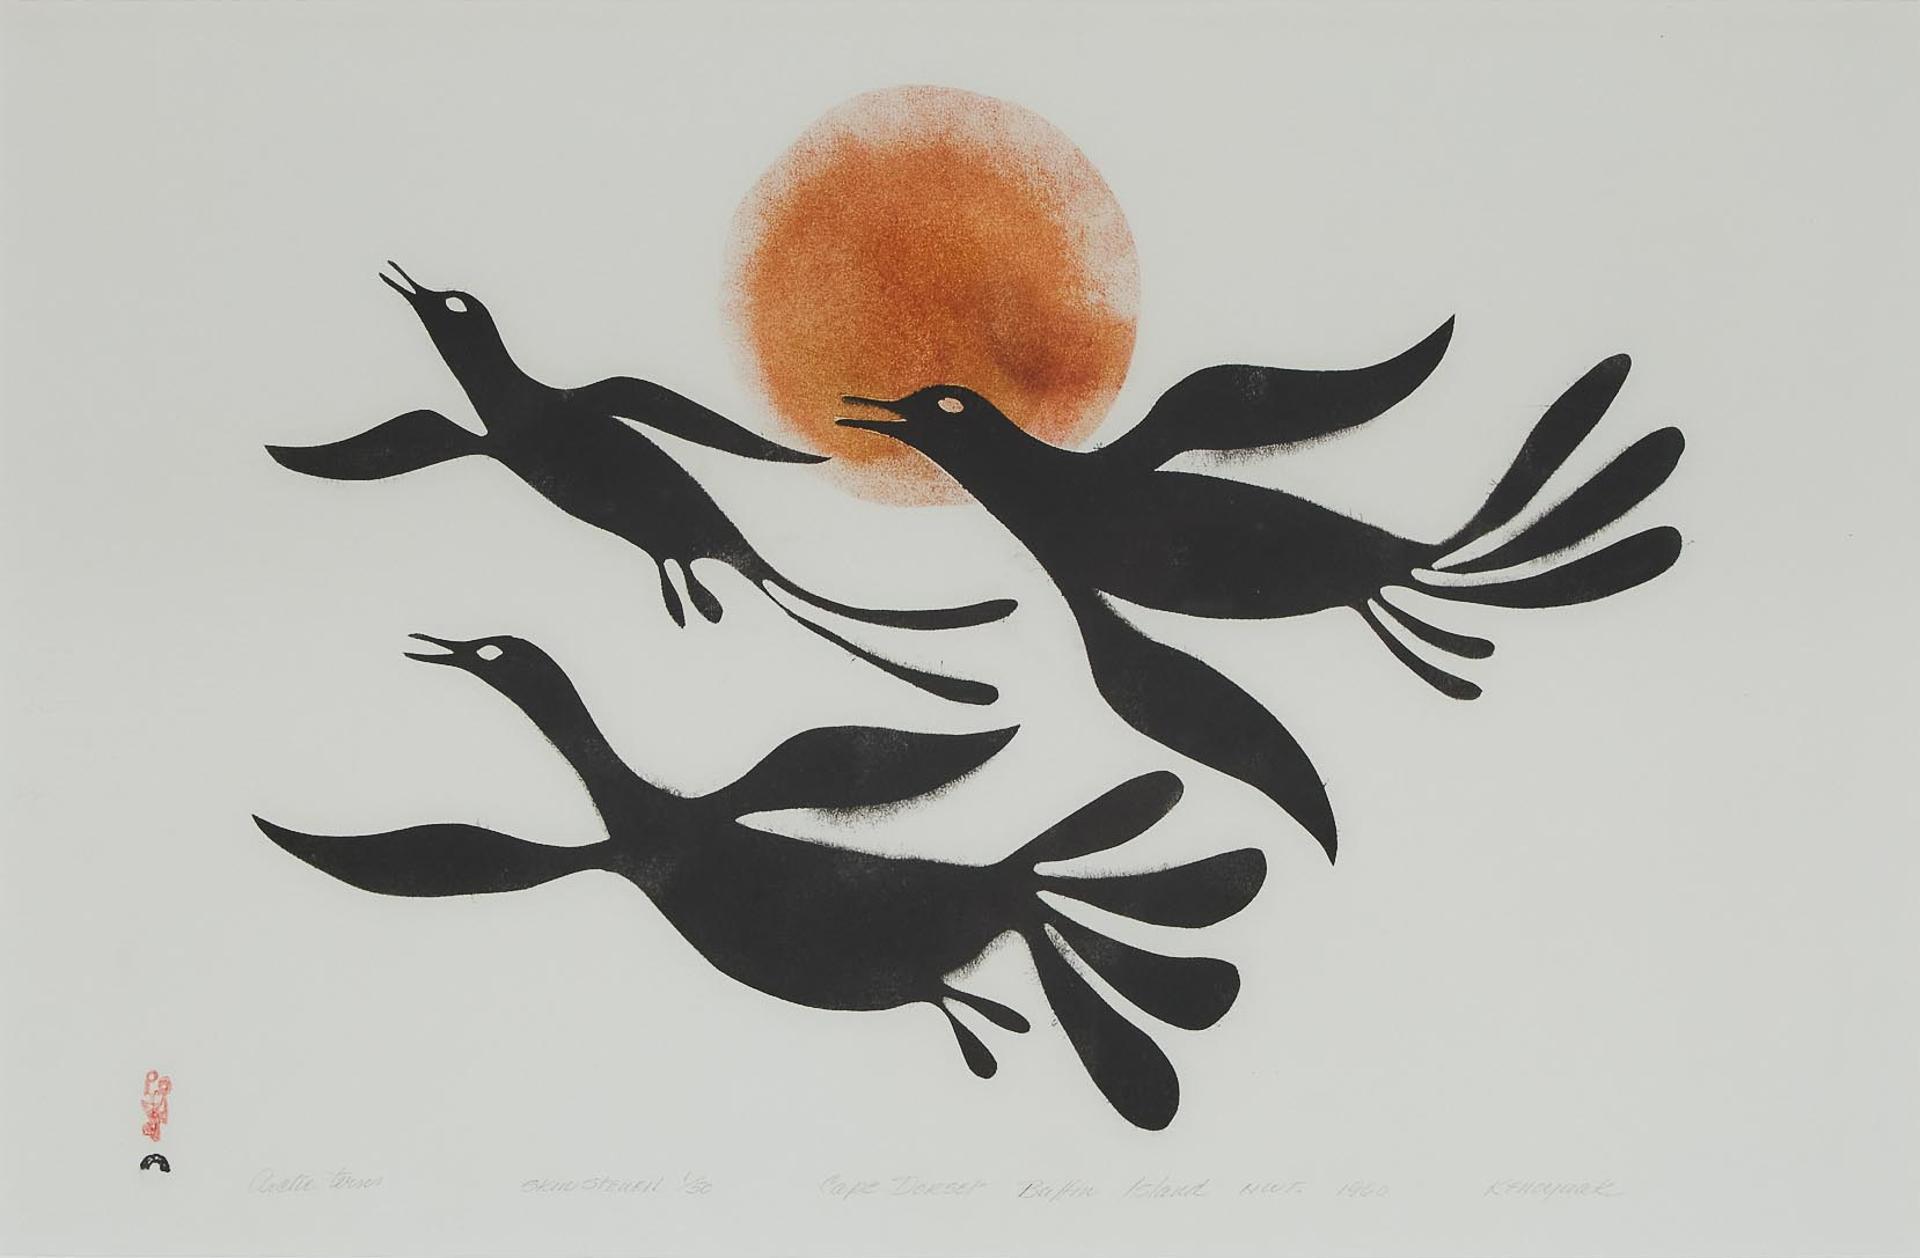 Kenojuak Ashevak (1927-2013) - Birds Over The Sun, 1960